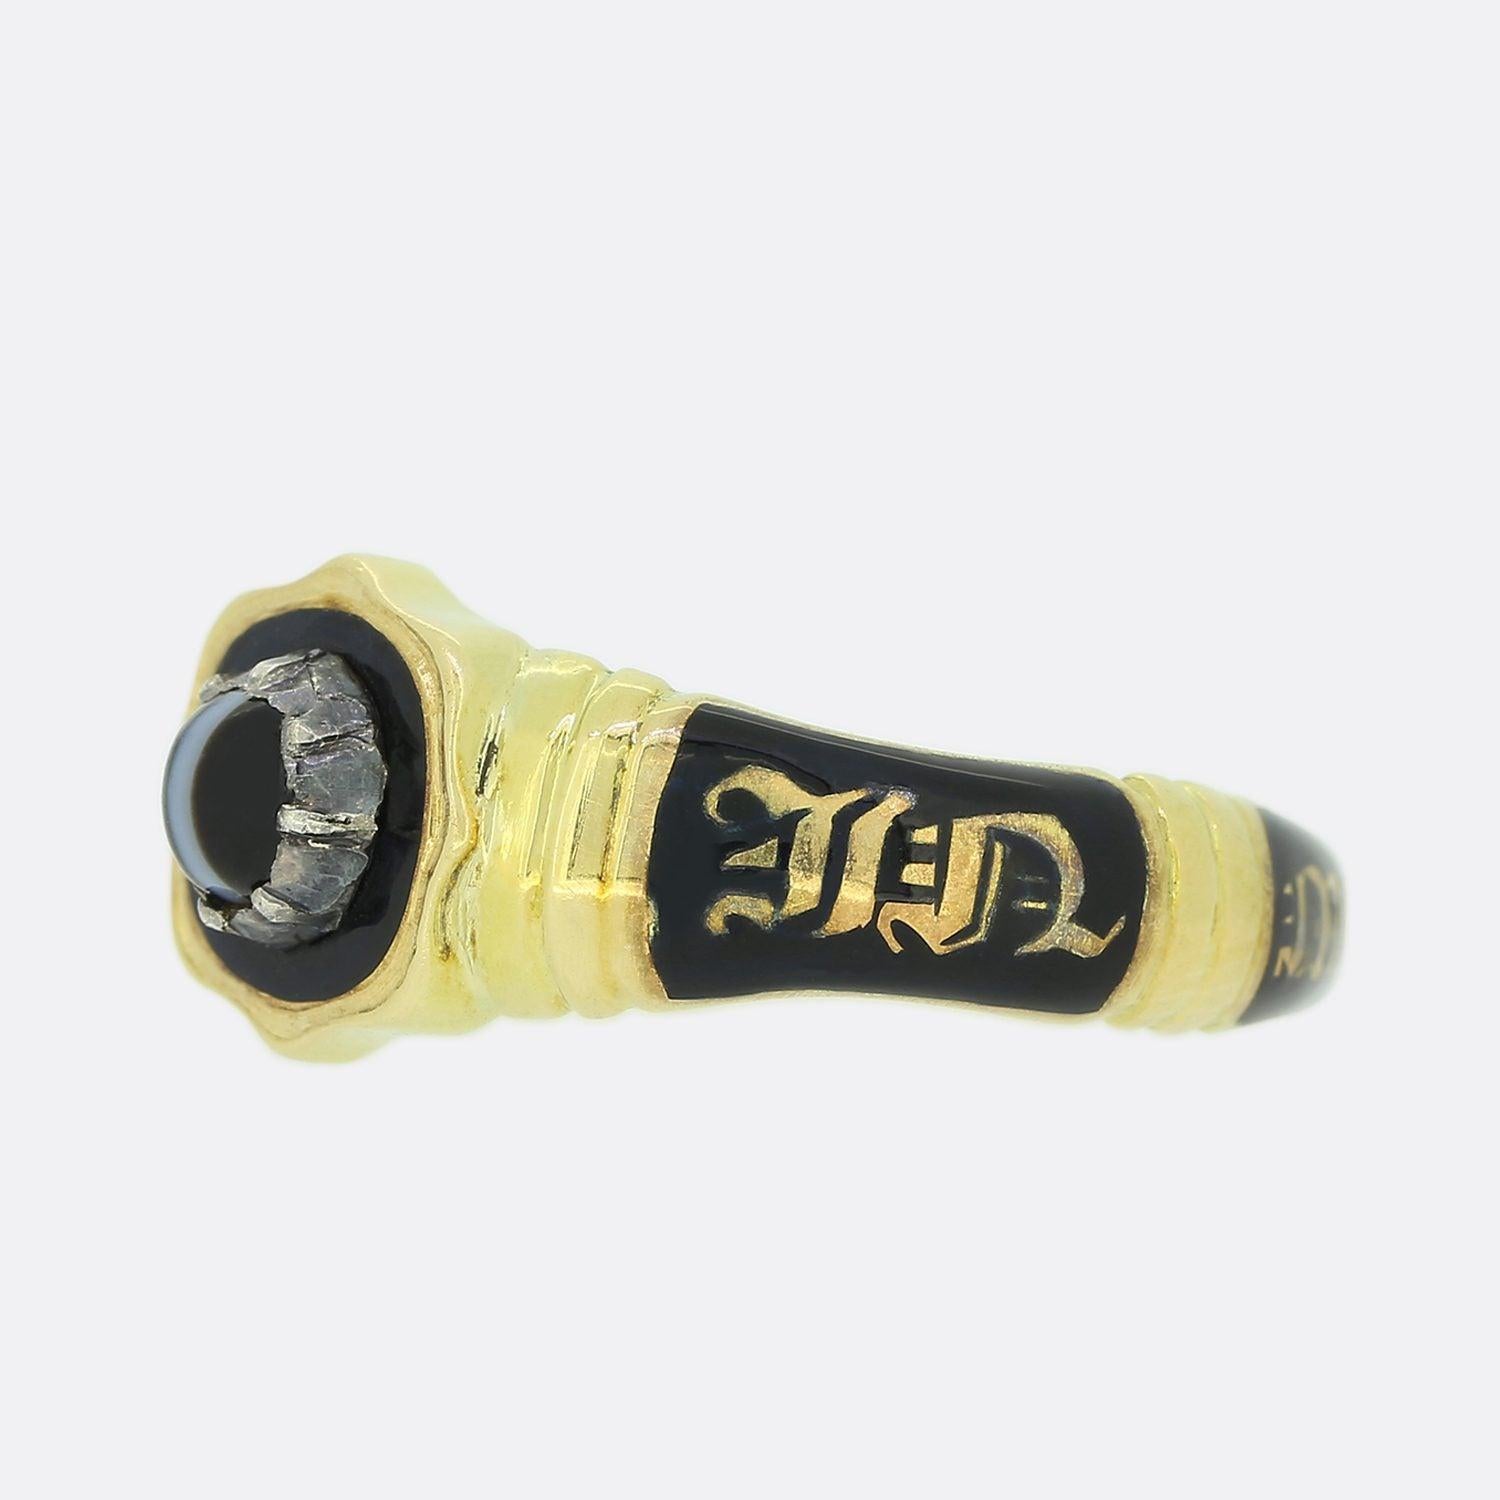 Dies ist ein wunderschöner Trauerring aus 18 Karat Gelbgold aus der frühen viktorianischen Ära. Der Ring ist mit einem schwarzen Katzenaugen-Turmalin in der Mitte besetzt. Das Ringband ist mit schwarzer Emaille und der Aufschrift 